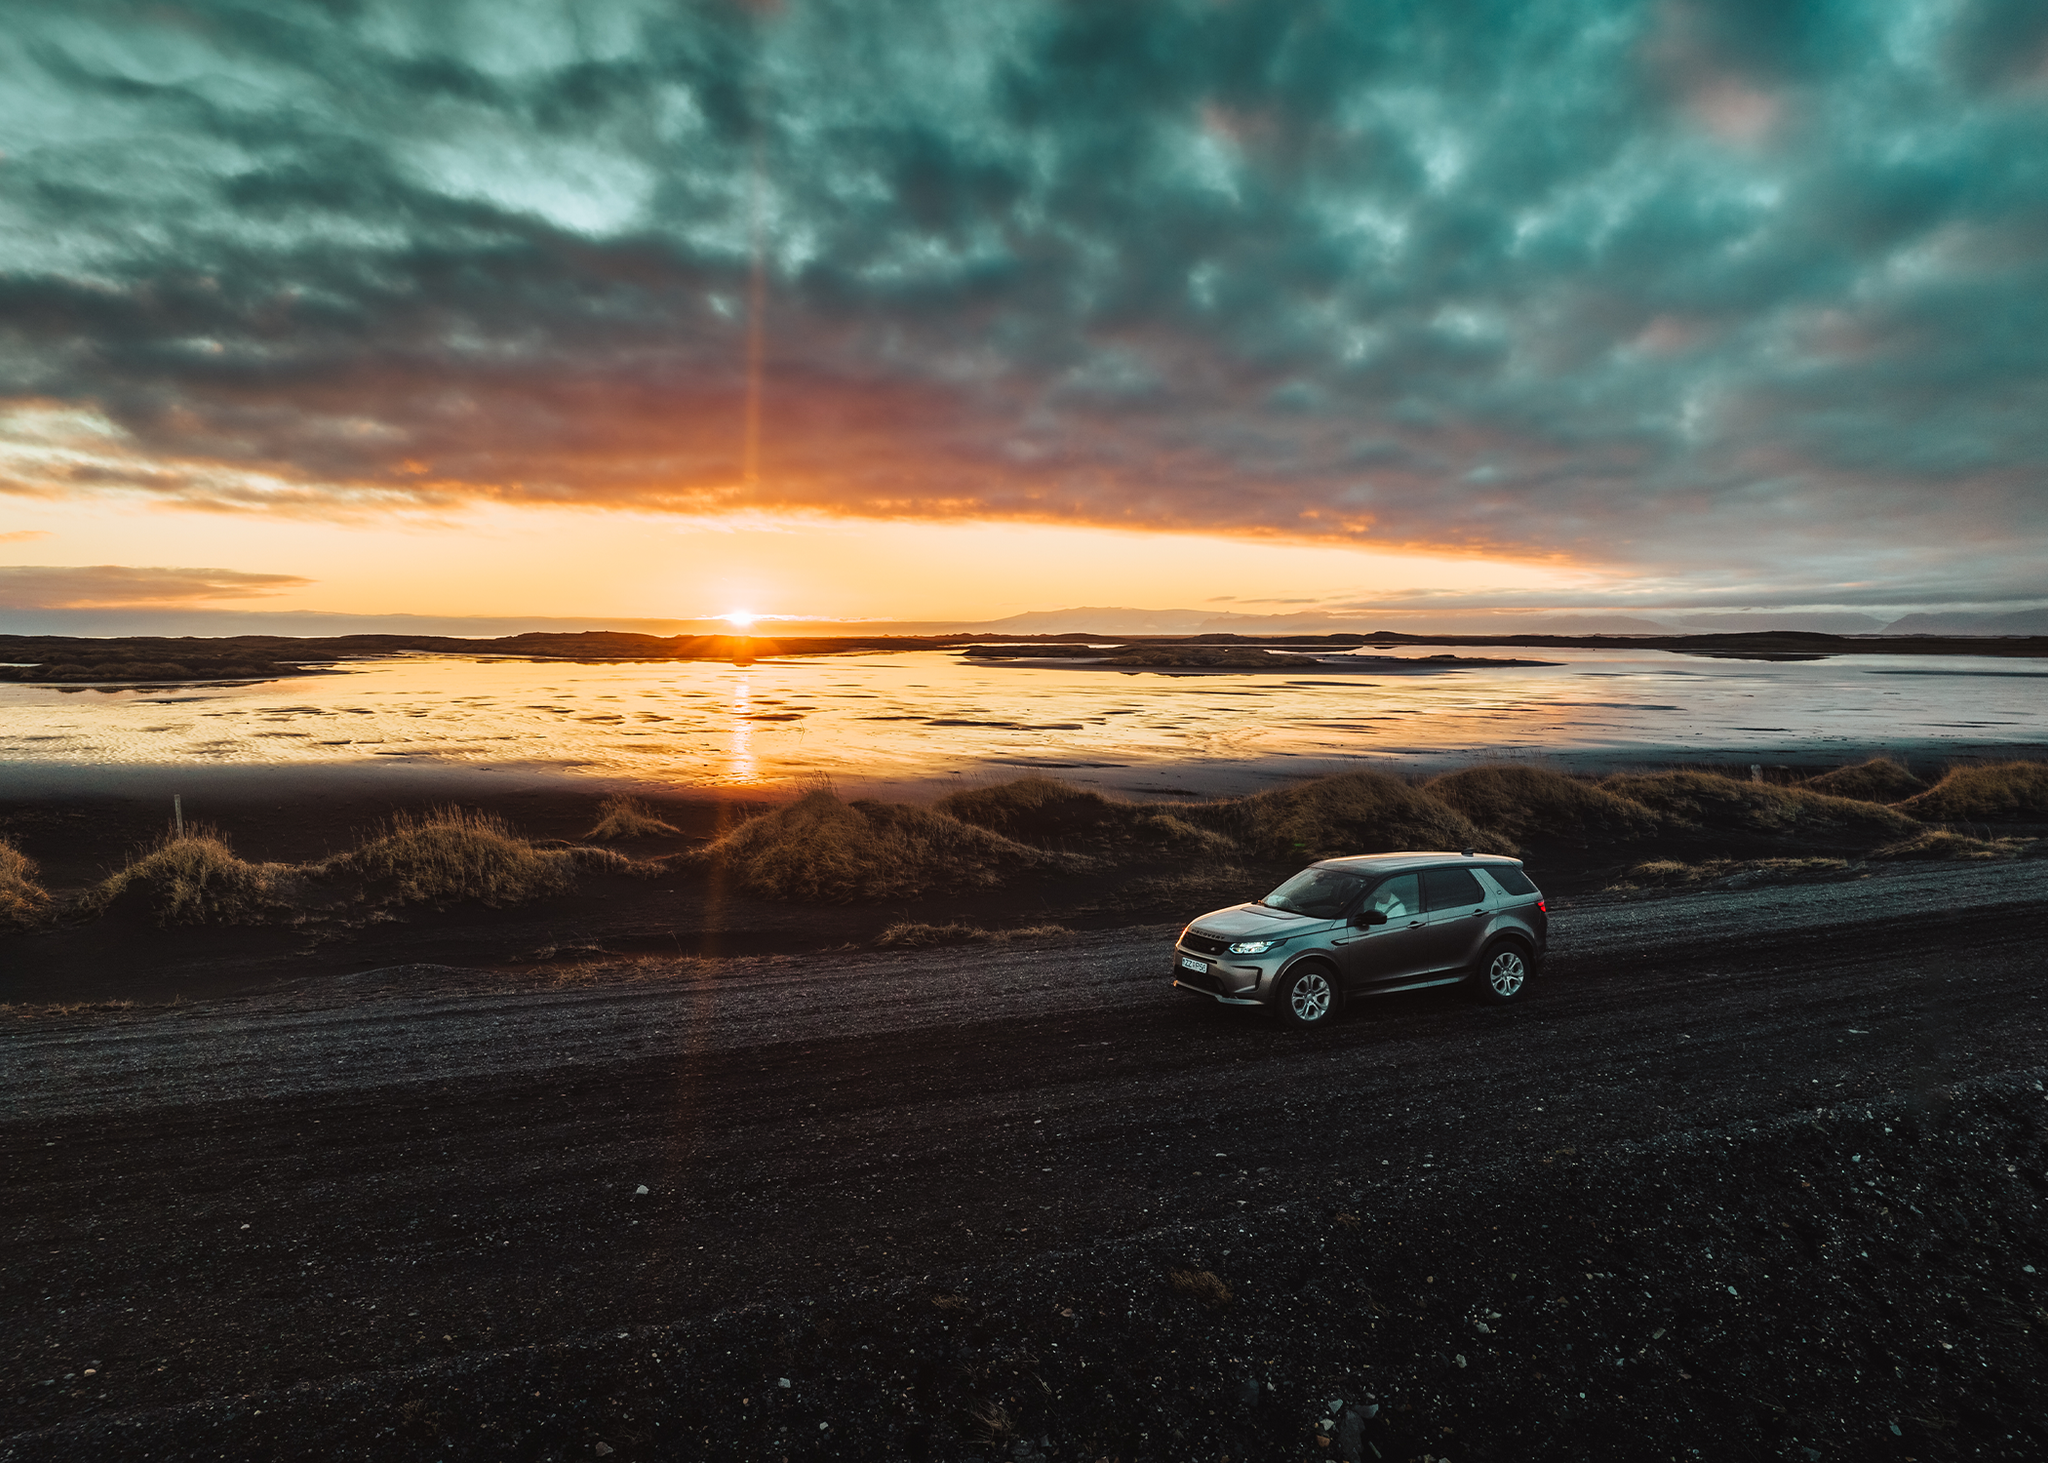 Land Rover Discovery Sport garée sur la route alors que le soleil se couche